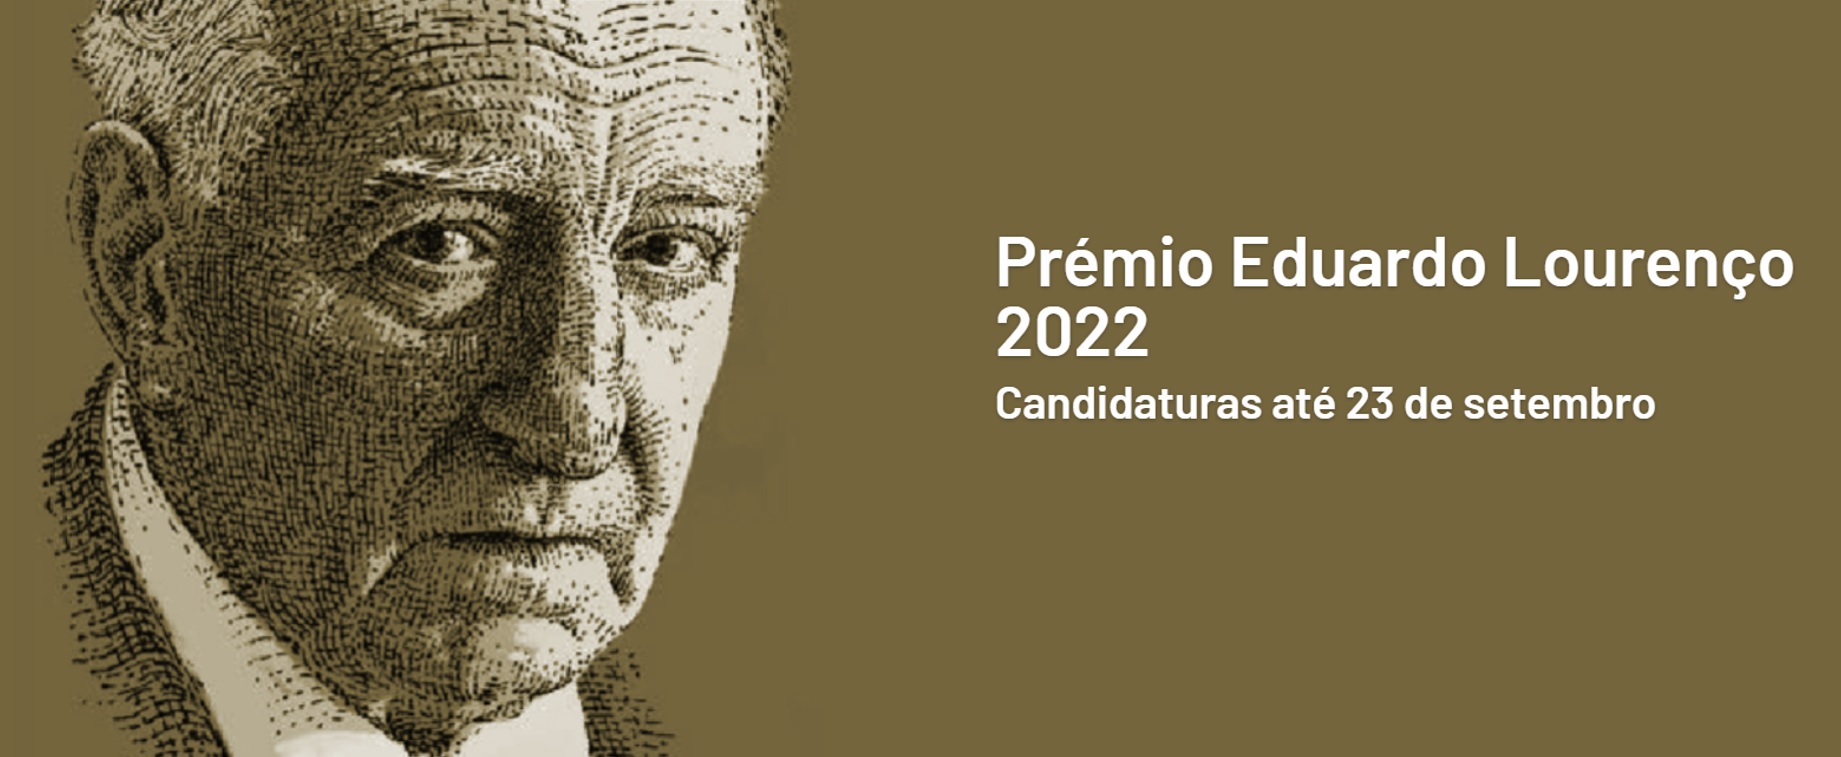 Premio Eduardo Lourenço